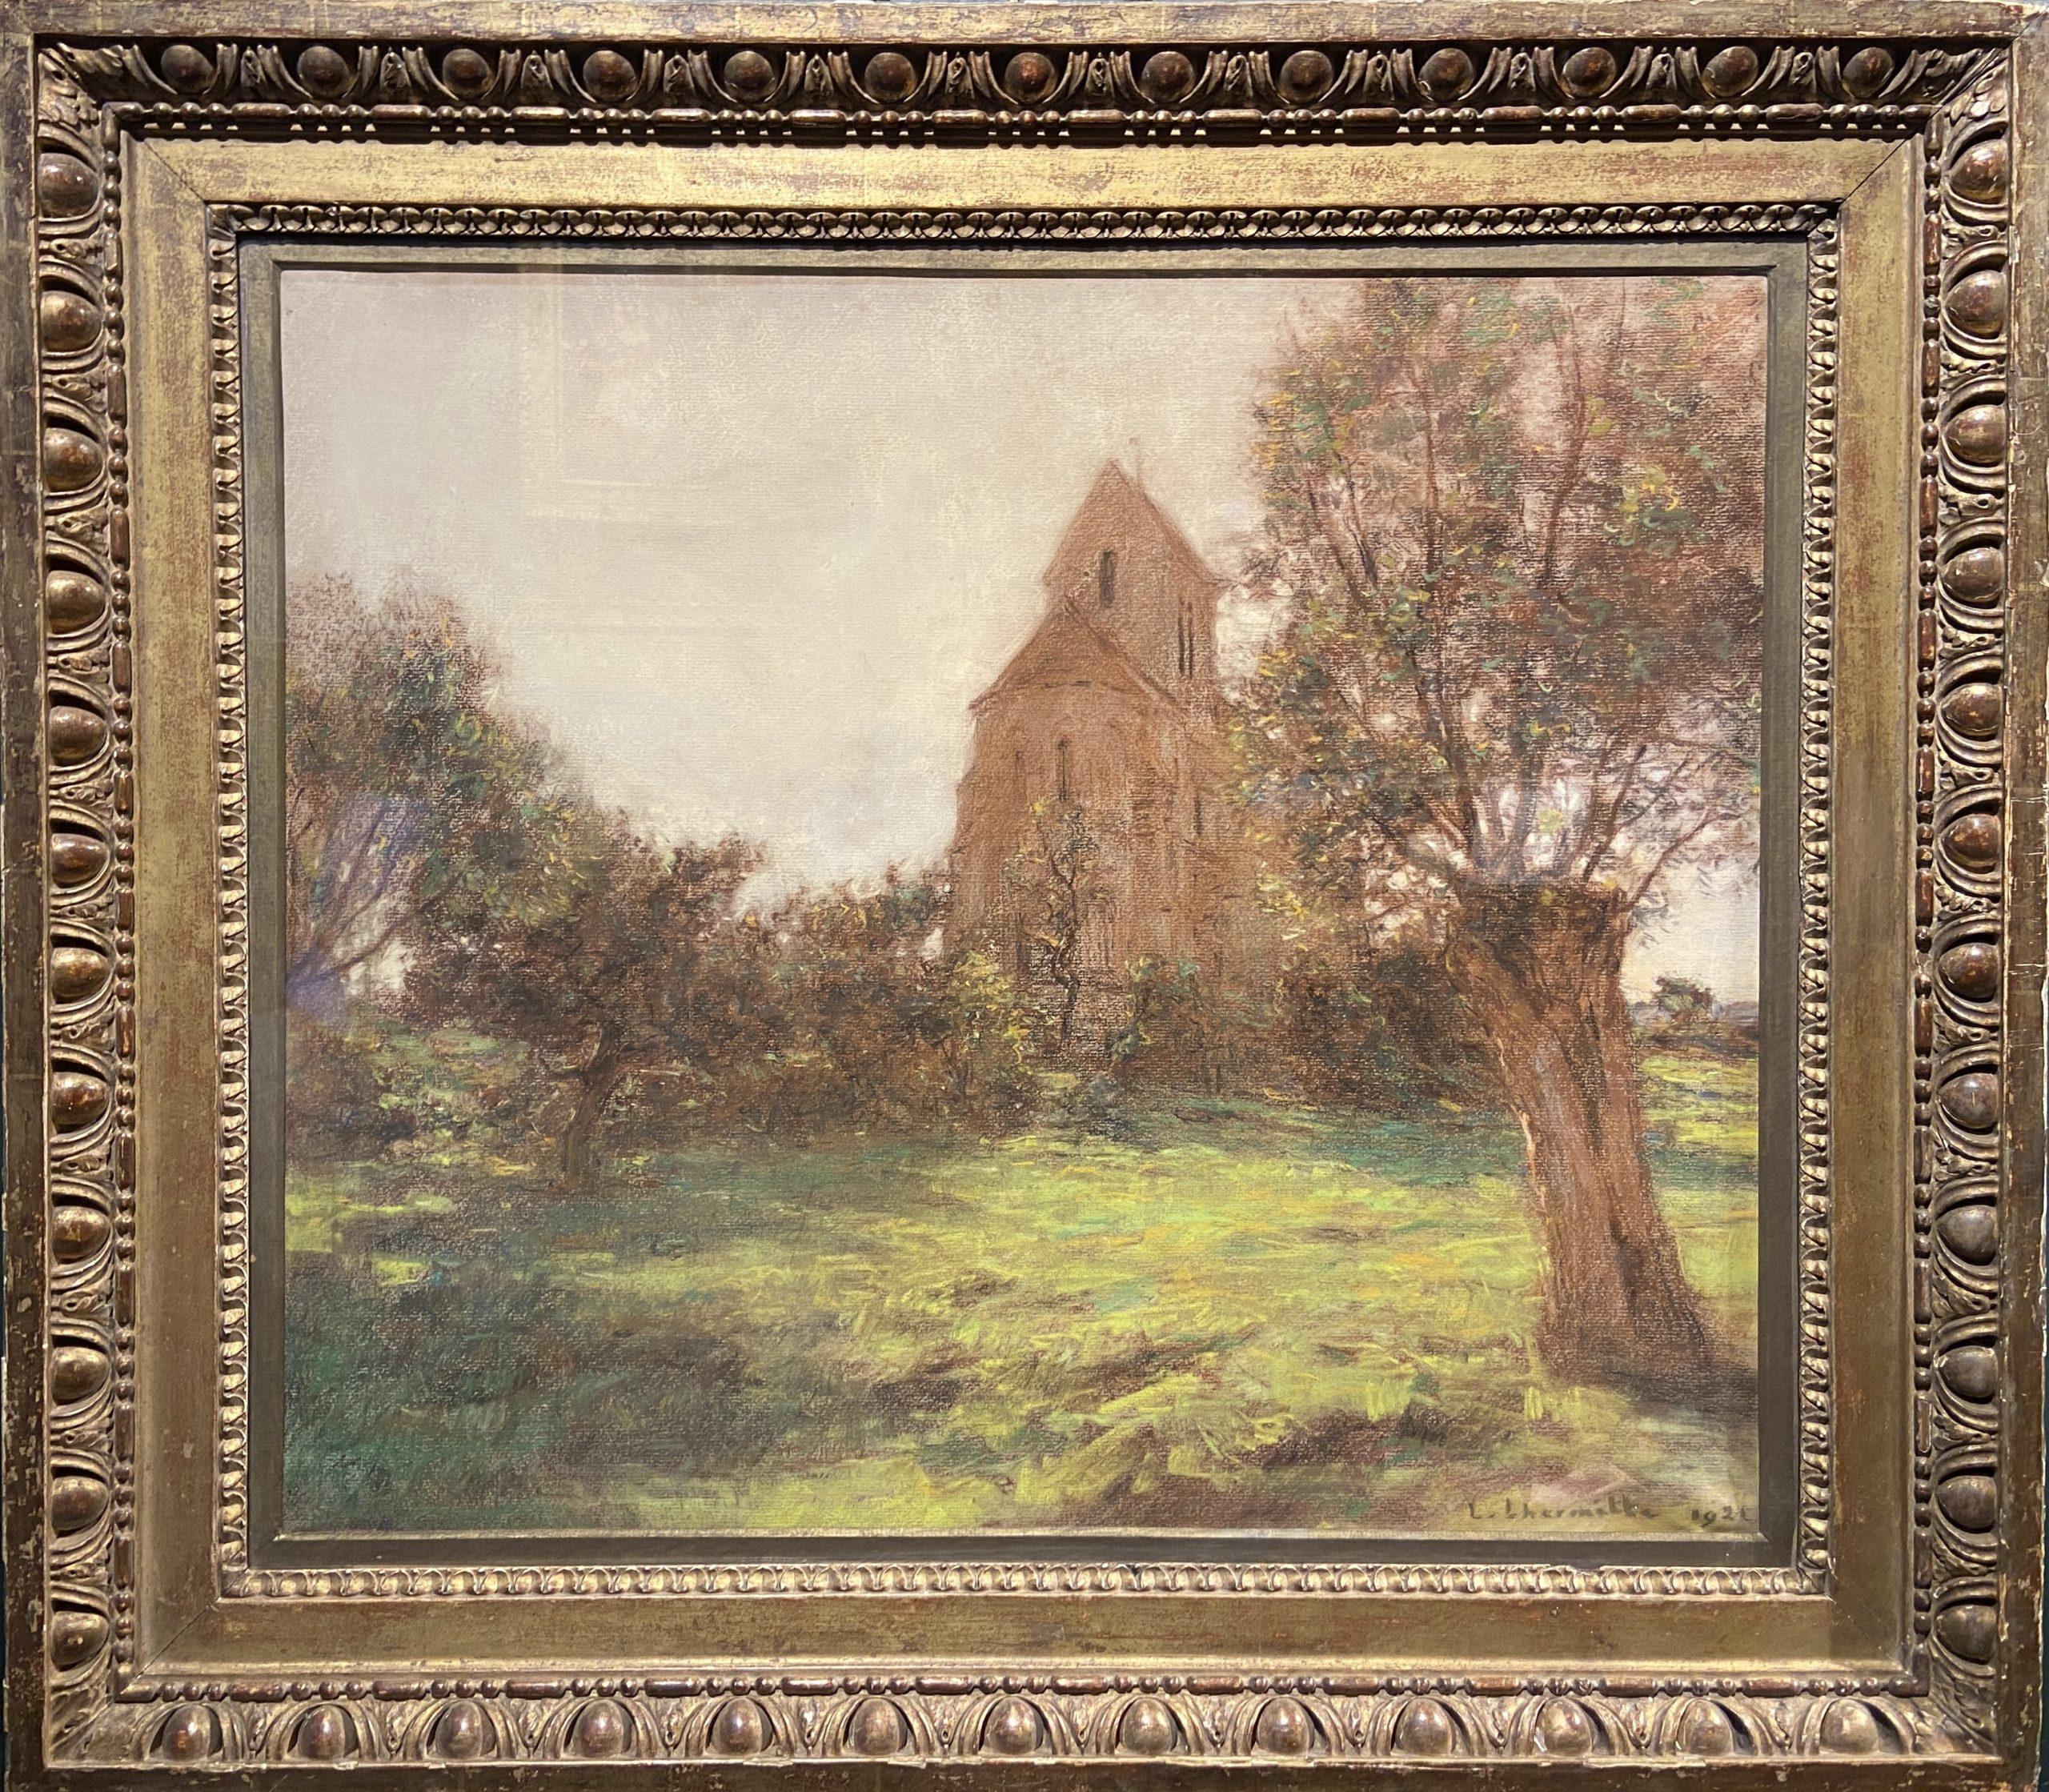 L'eglise de Mézy-Moulins, Pastell 19. Jahrhundert Französische Landschaft, signiert und datiert 1921 – Art von Léon Augustin Lhermitte